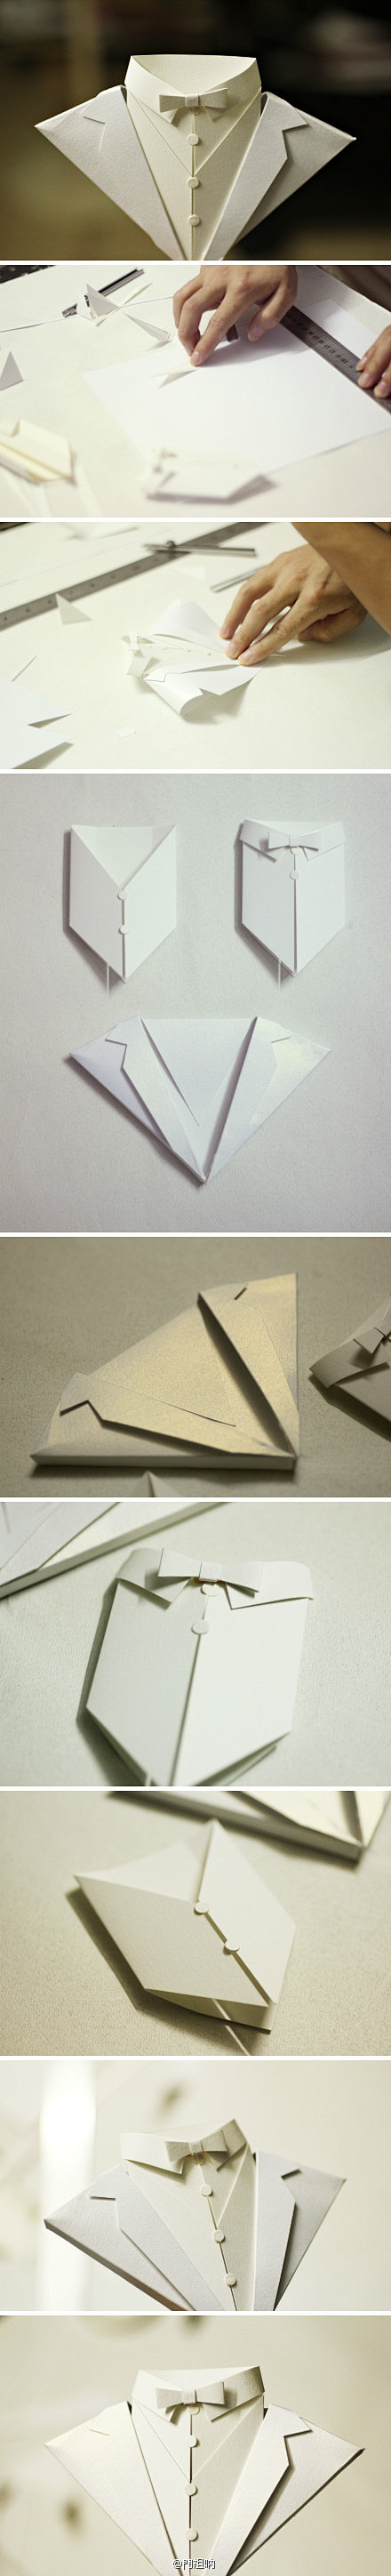 折纸 燕尾